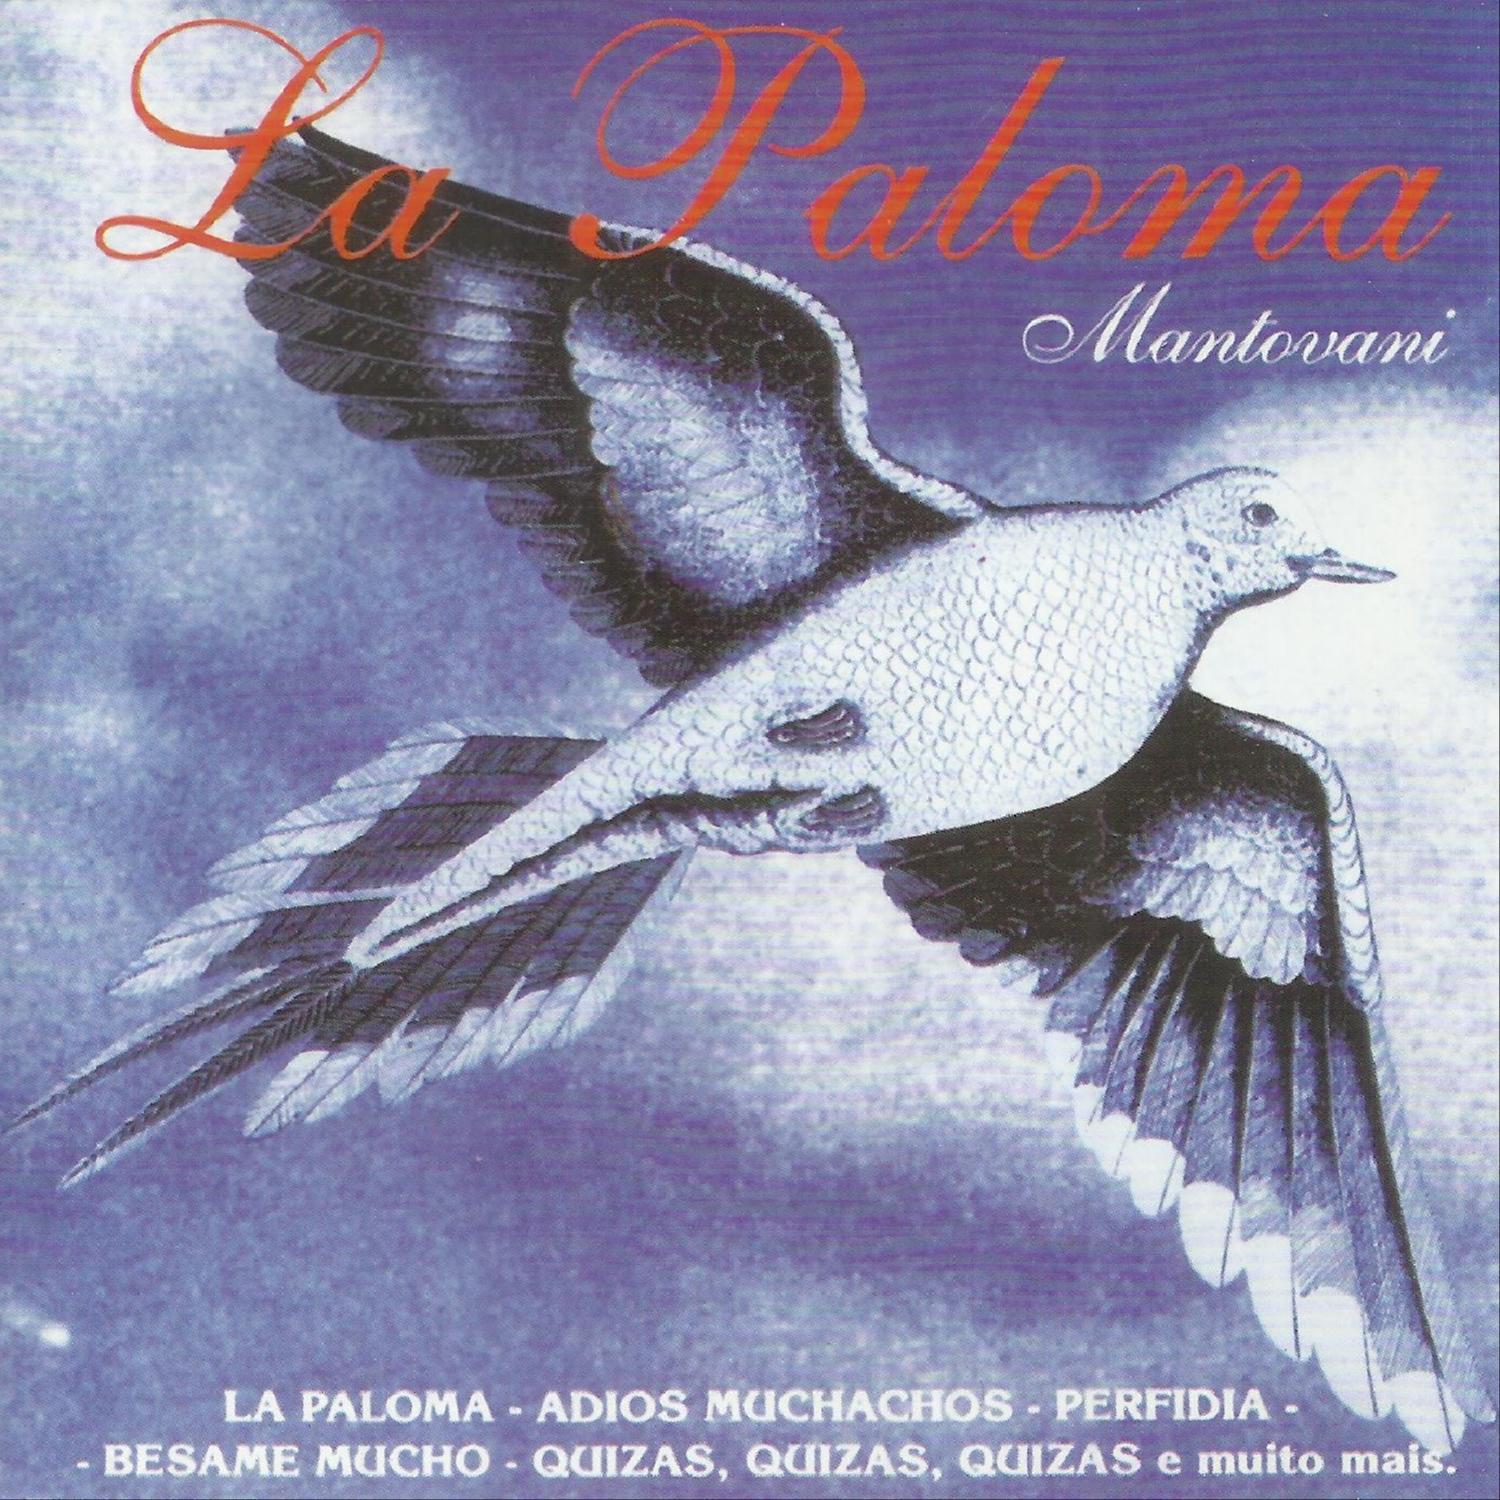 La Paloma - Mantovani